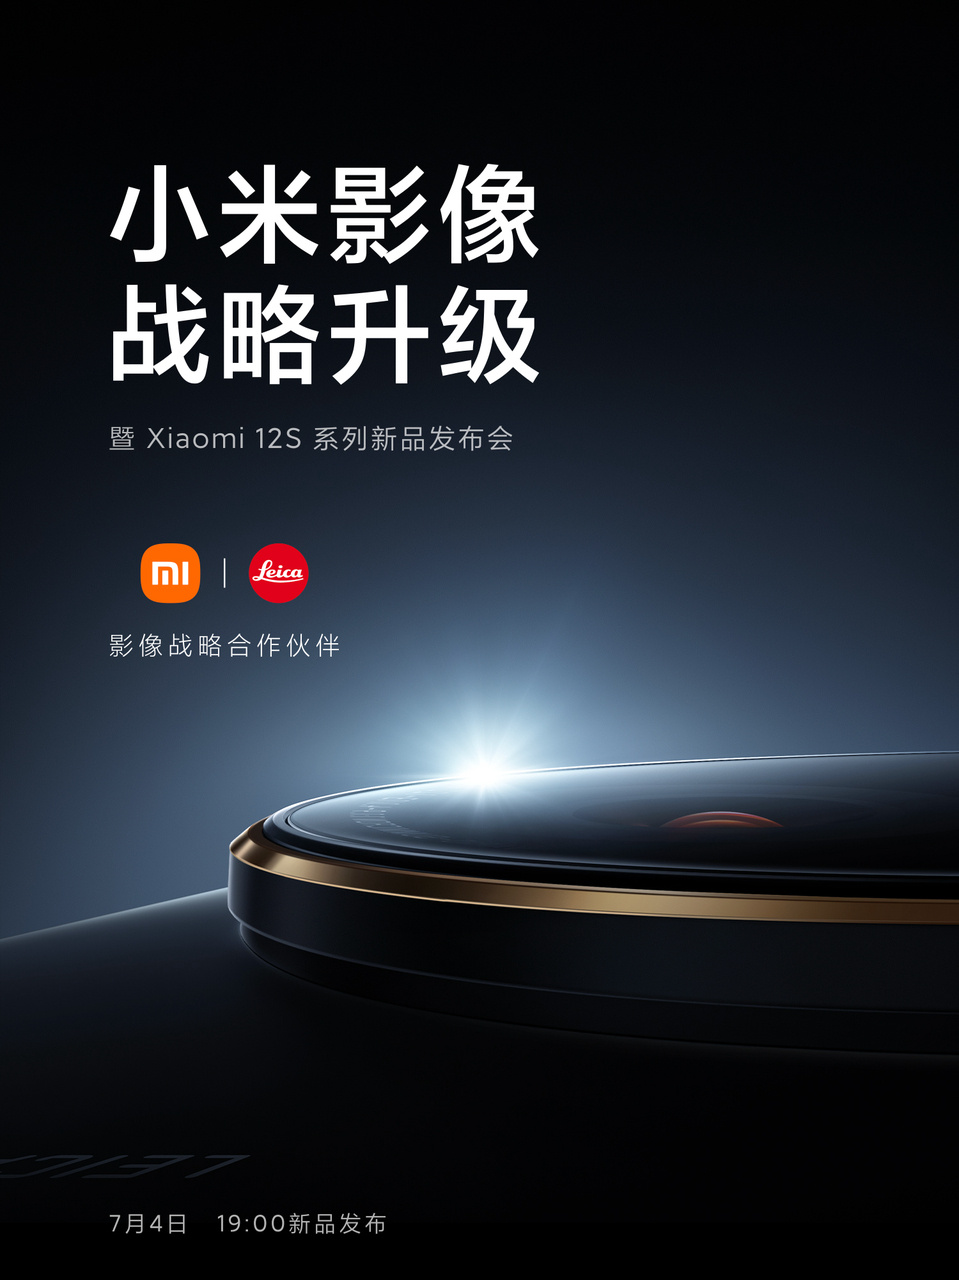 Xiaomi 12S launch date-